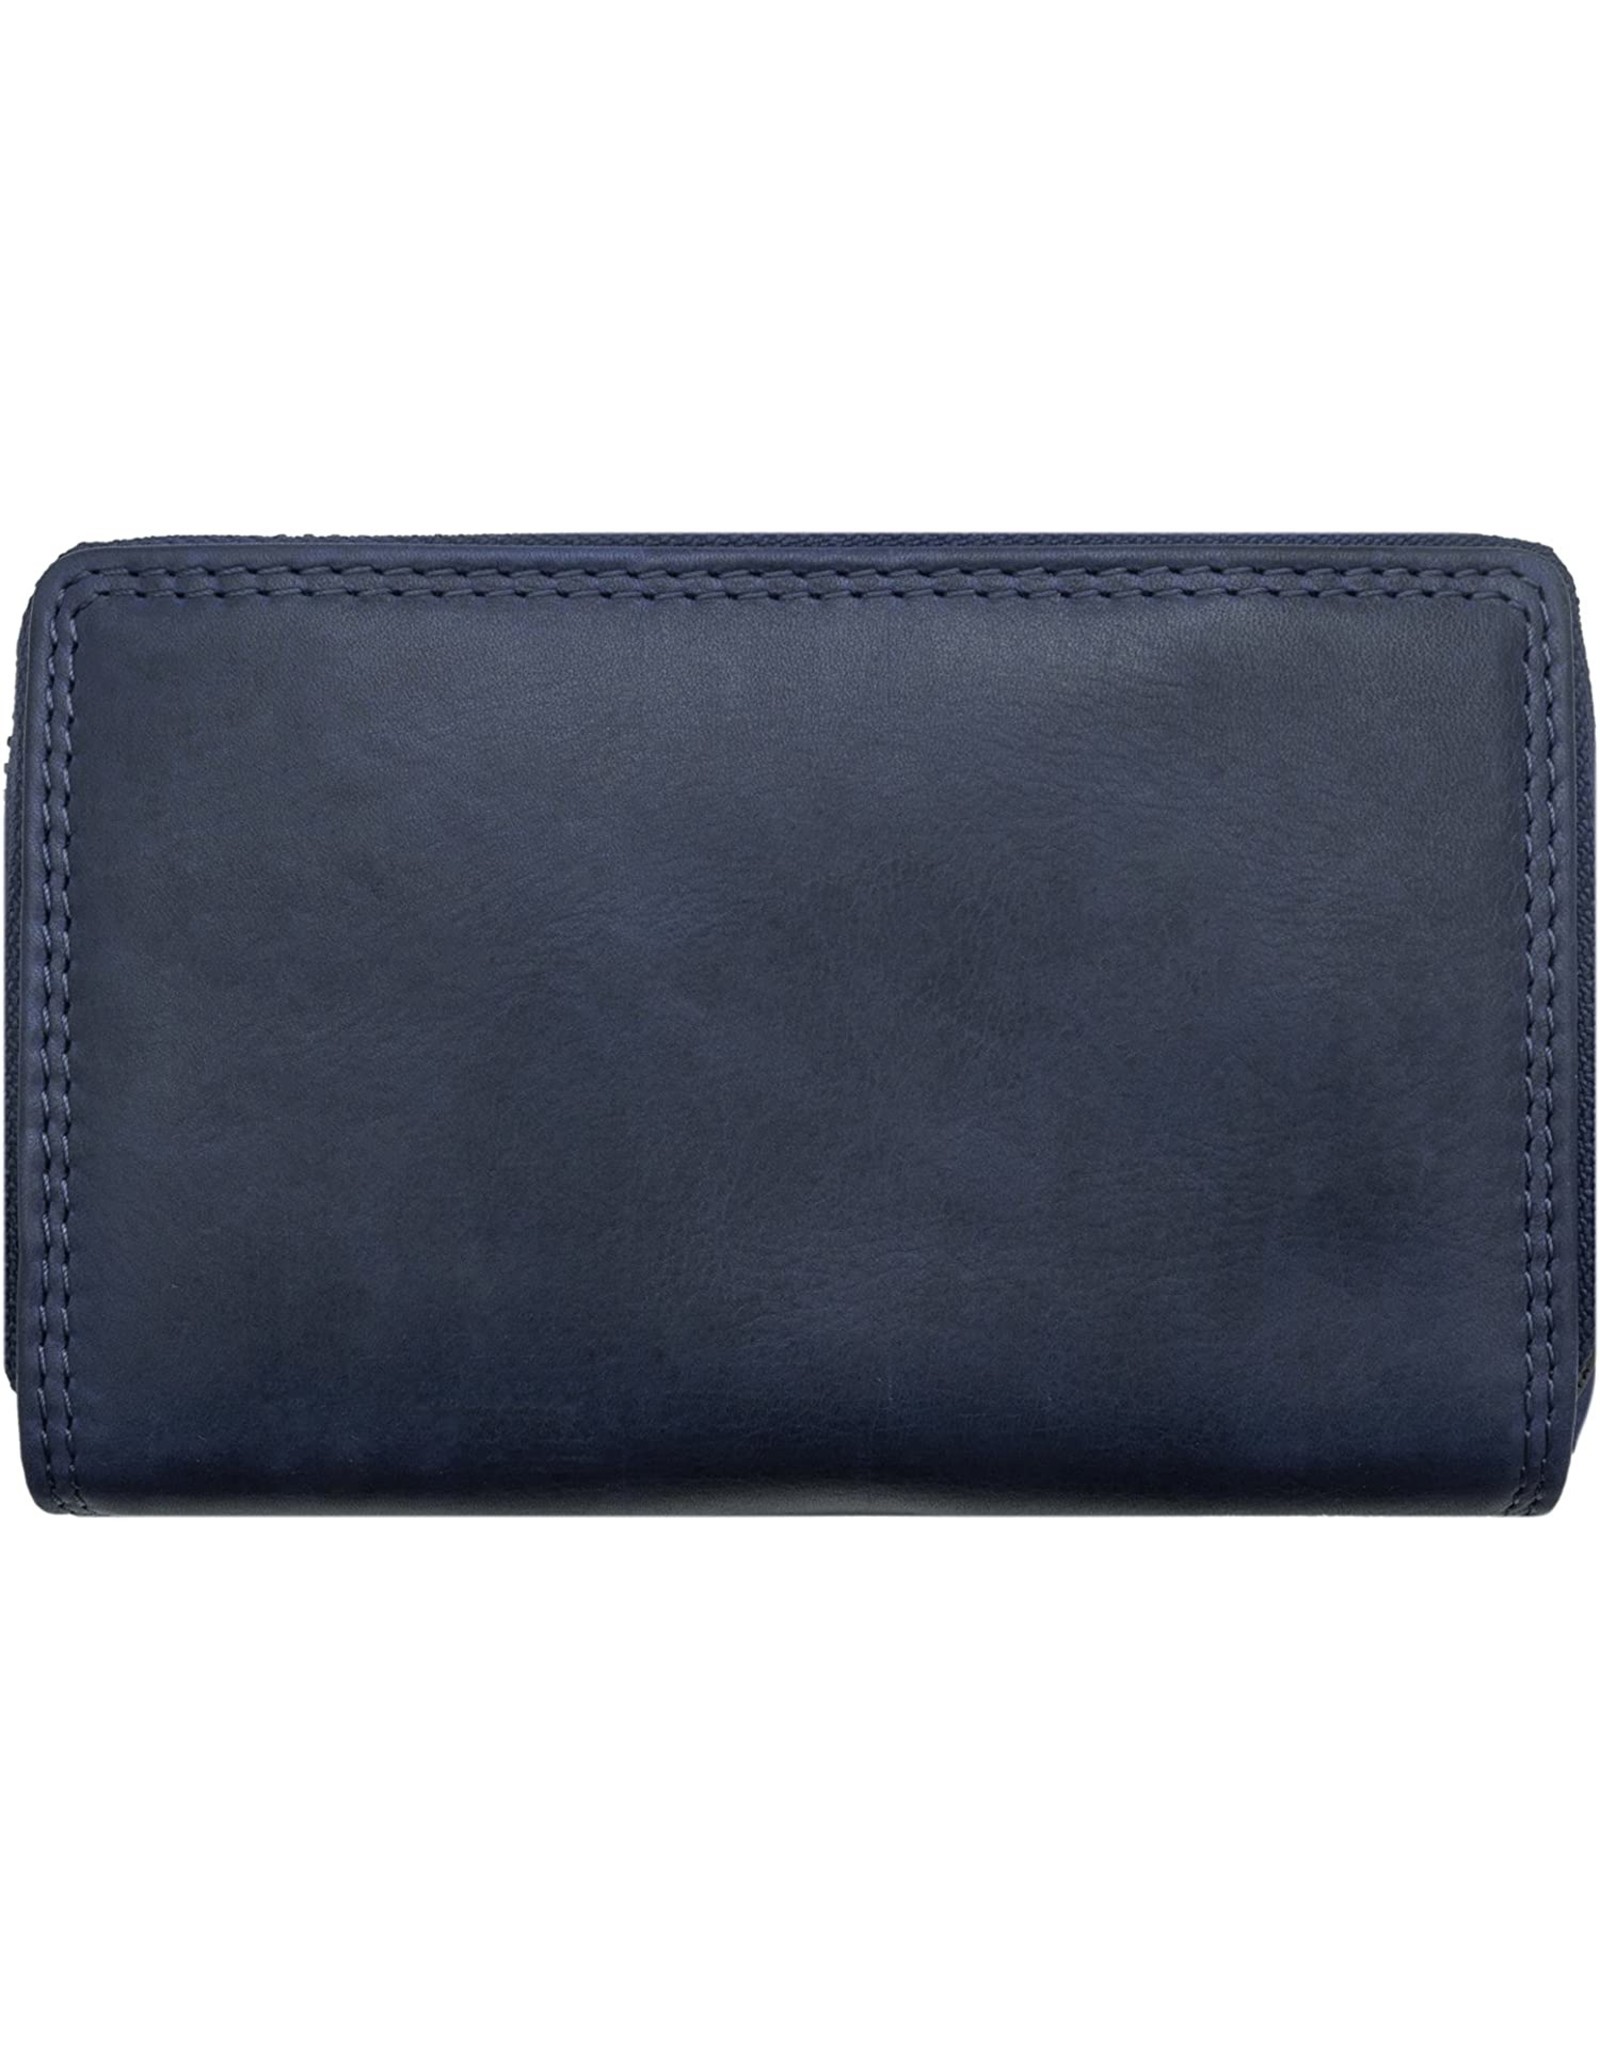 HillBurry Leren portemonnees - Hillburry leren portemonnee met RFID blauw blue